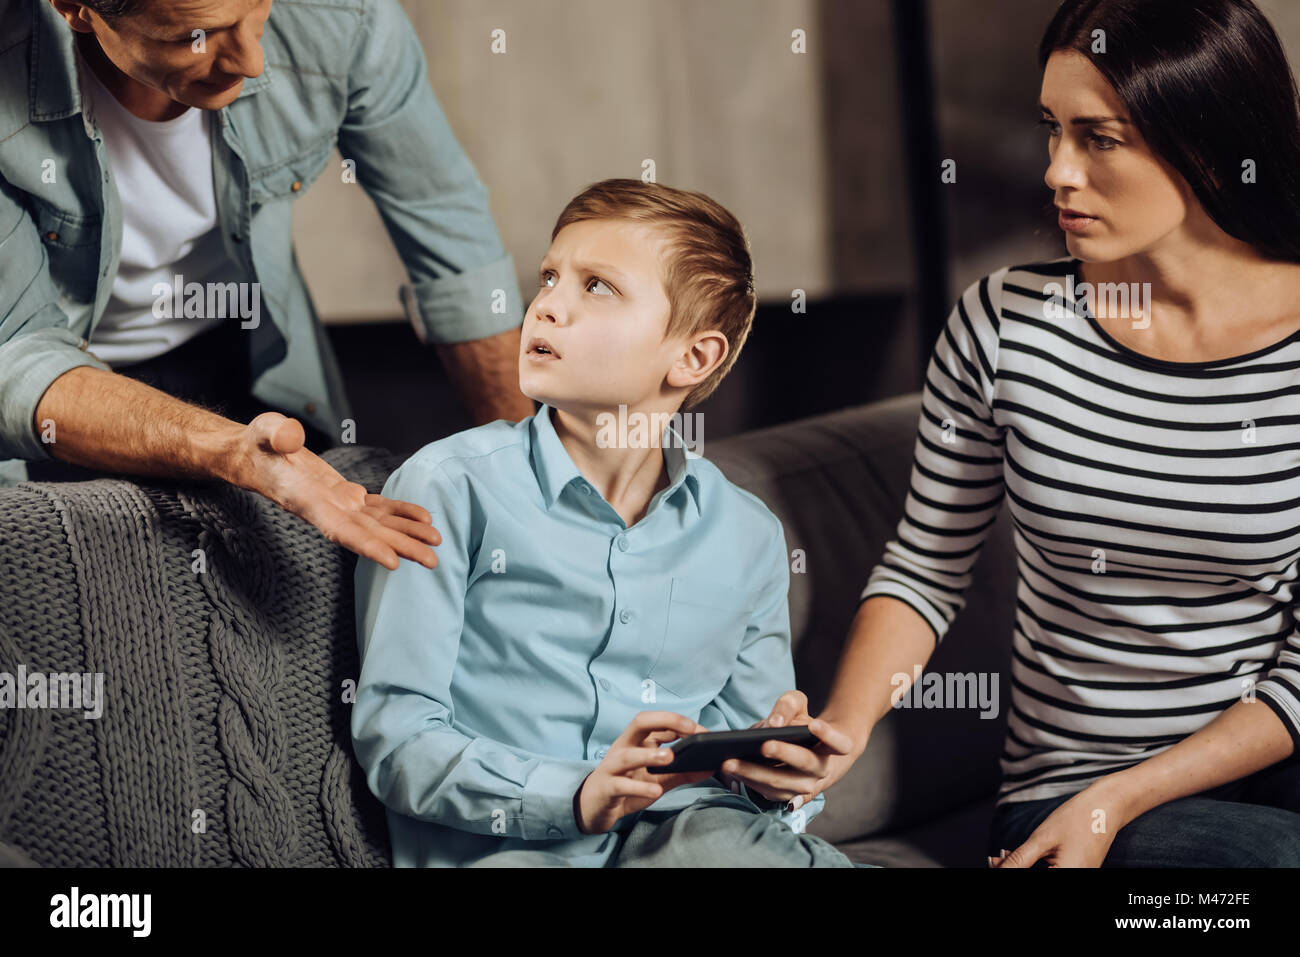 Padre joven regañar a su hijo por atracón-jugando Foto de stock